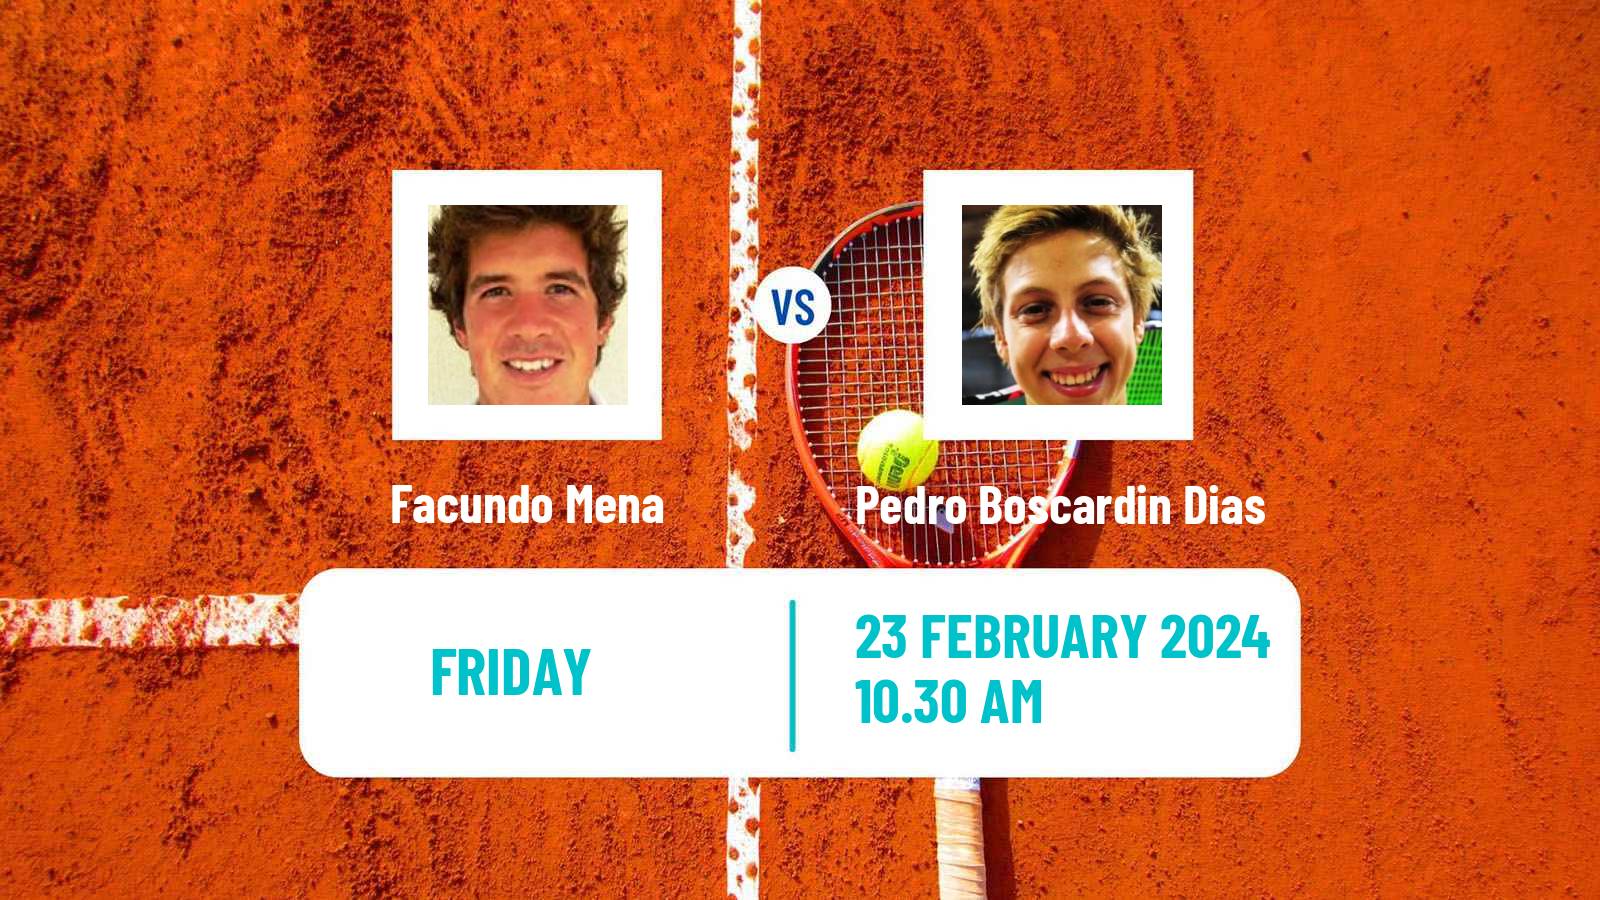 Tennis ITF M15 Villa Maria Men Facundo Mena - Pedro Boscardin Dias